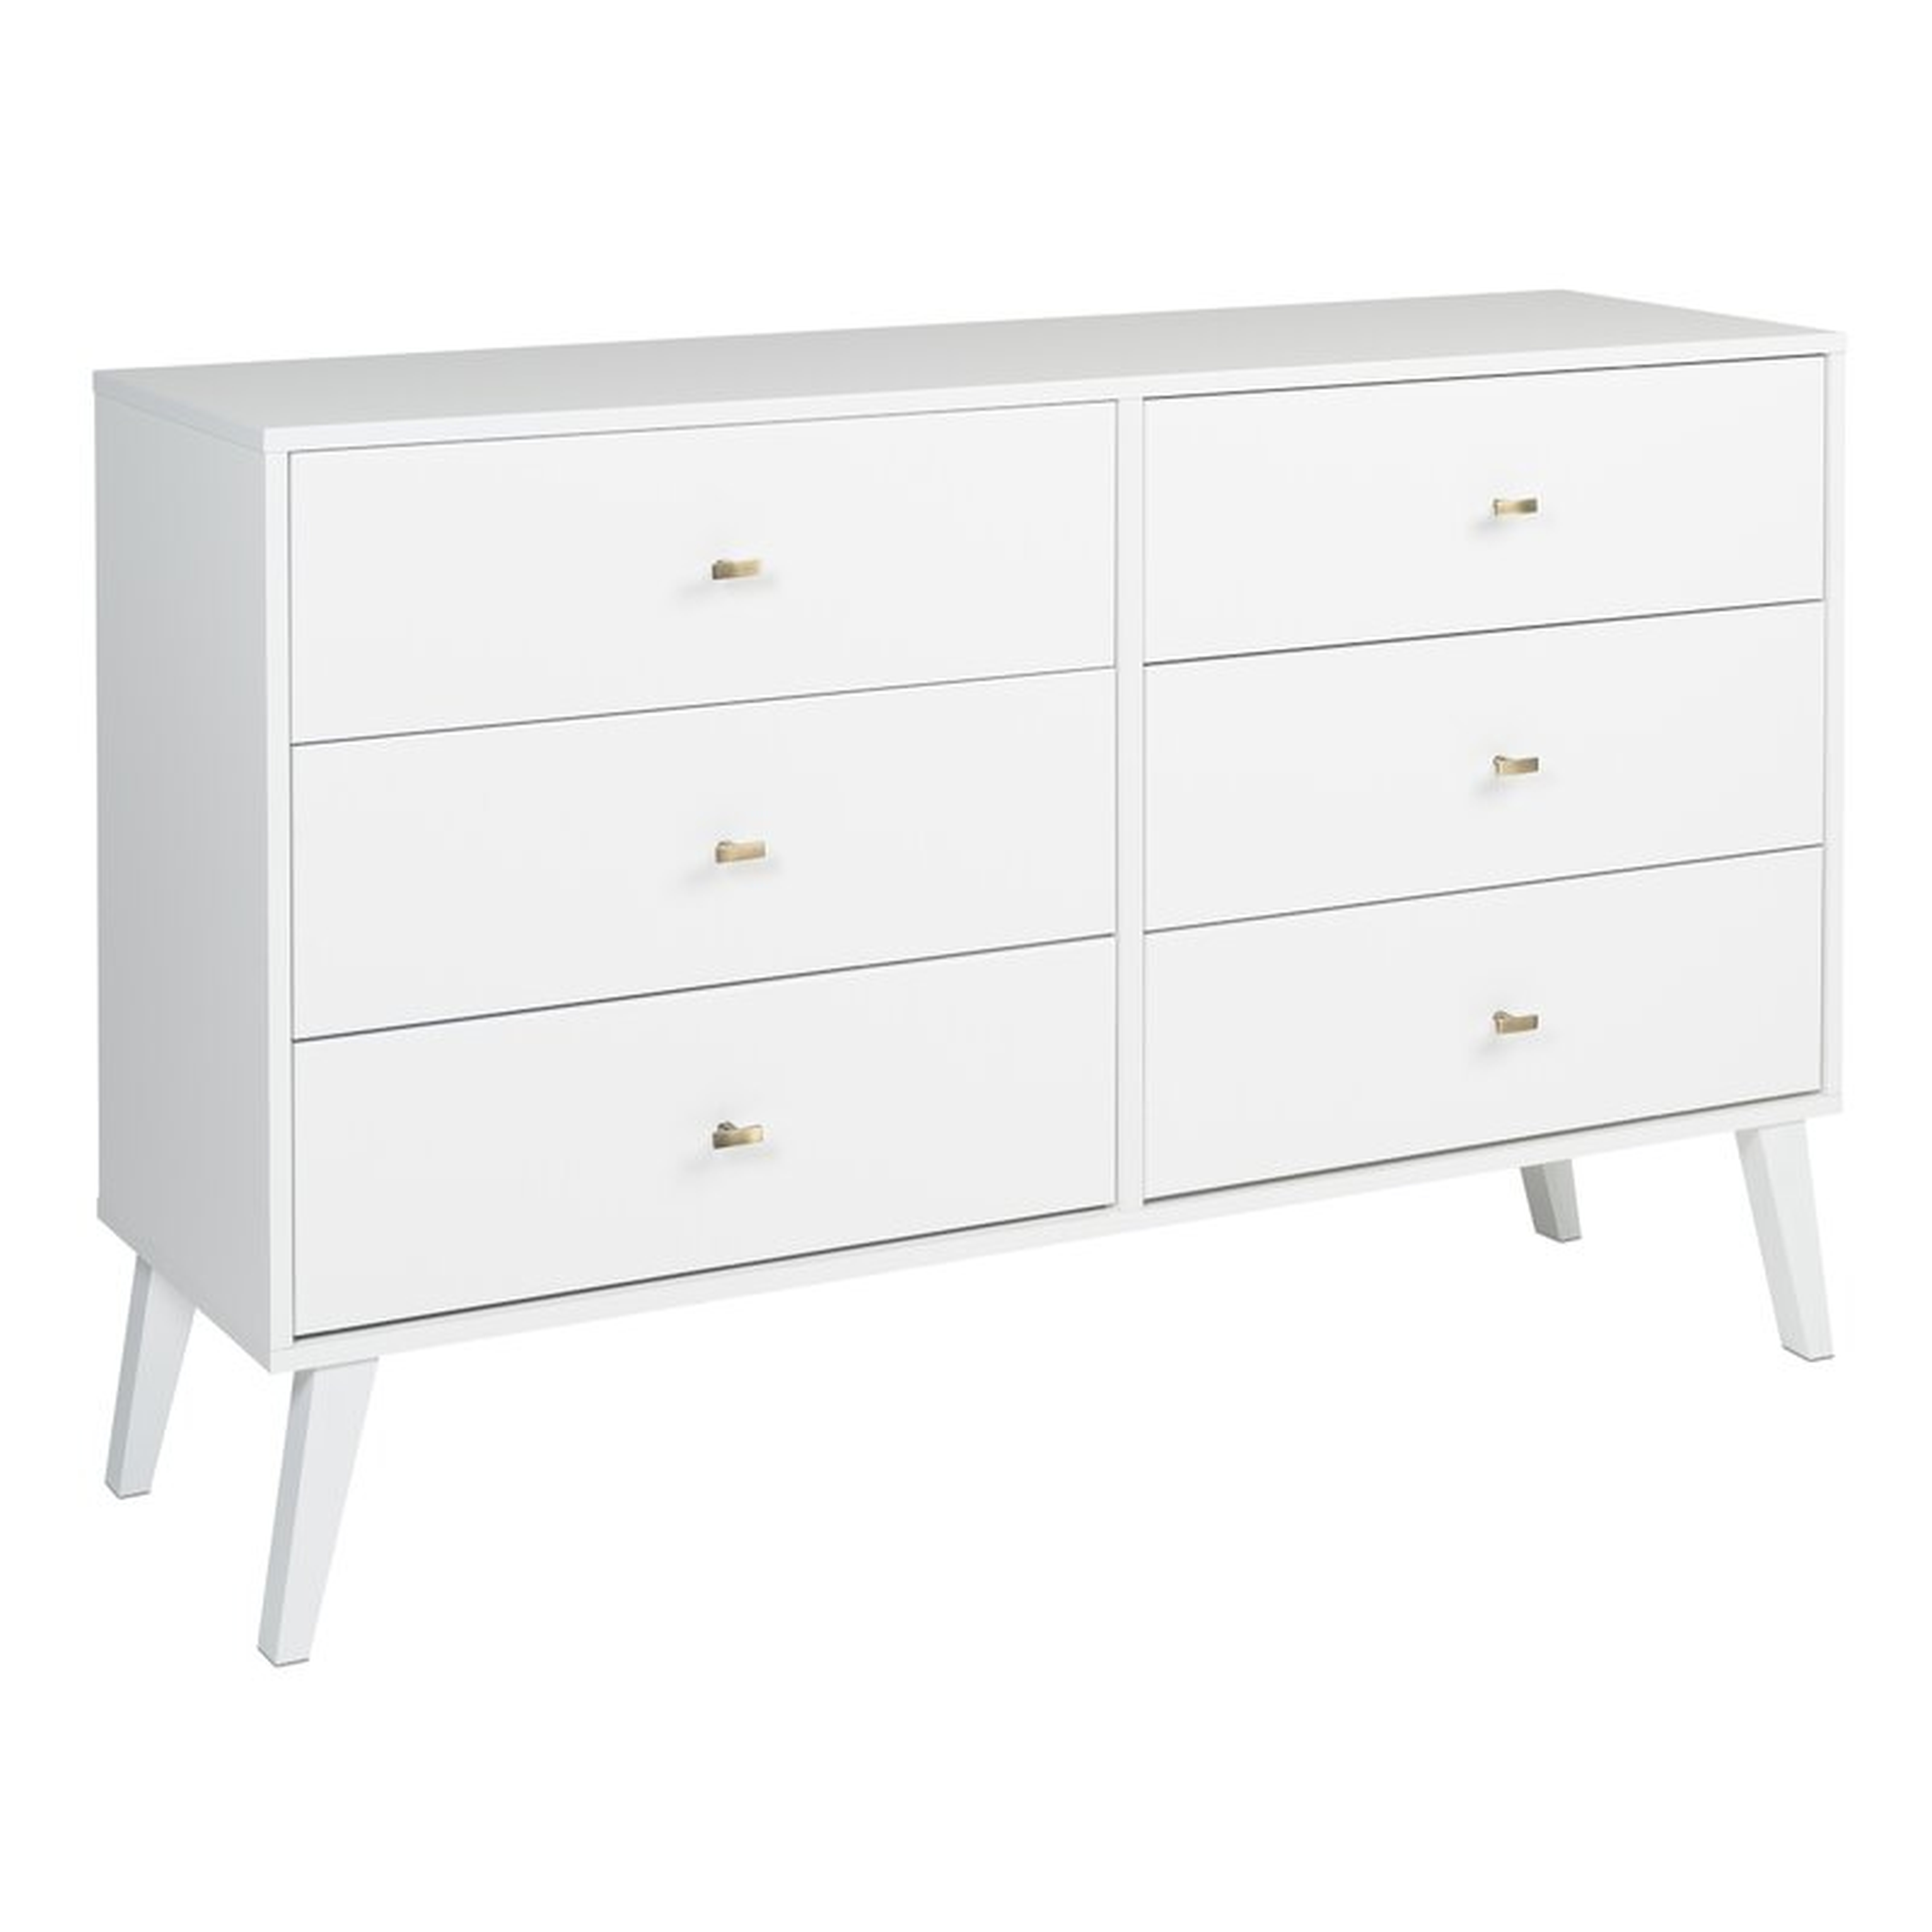 Alyssa 6-Drawer Double Dresser, White - Wayfair